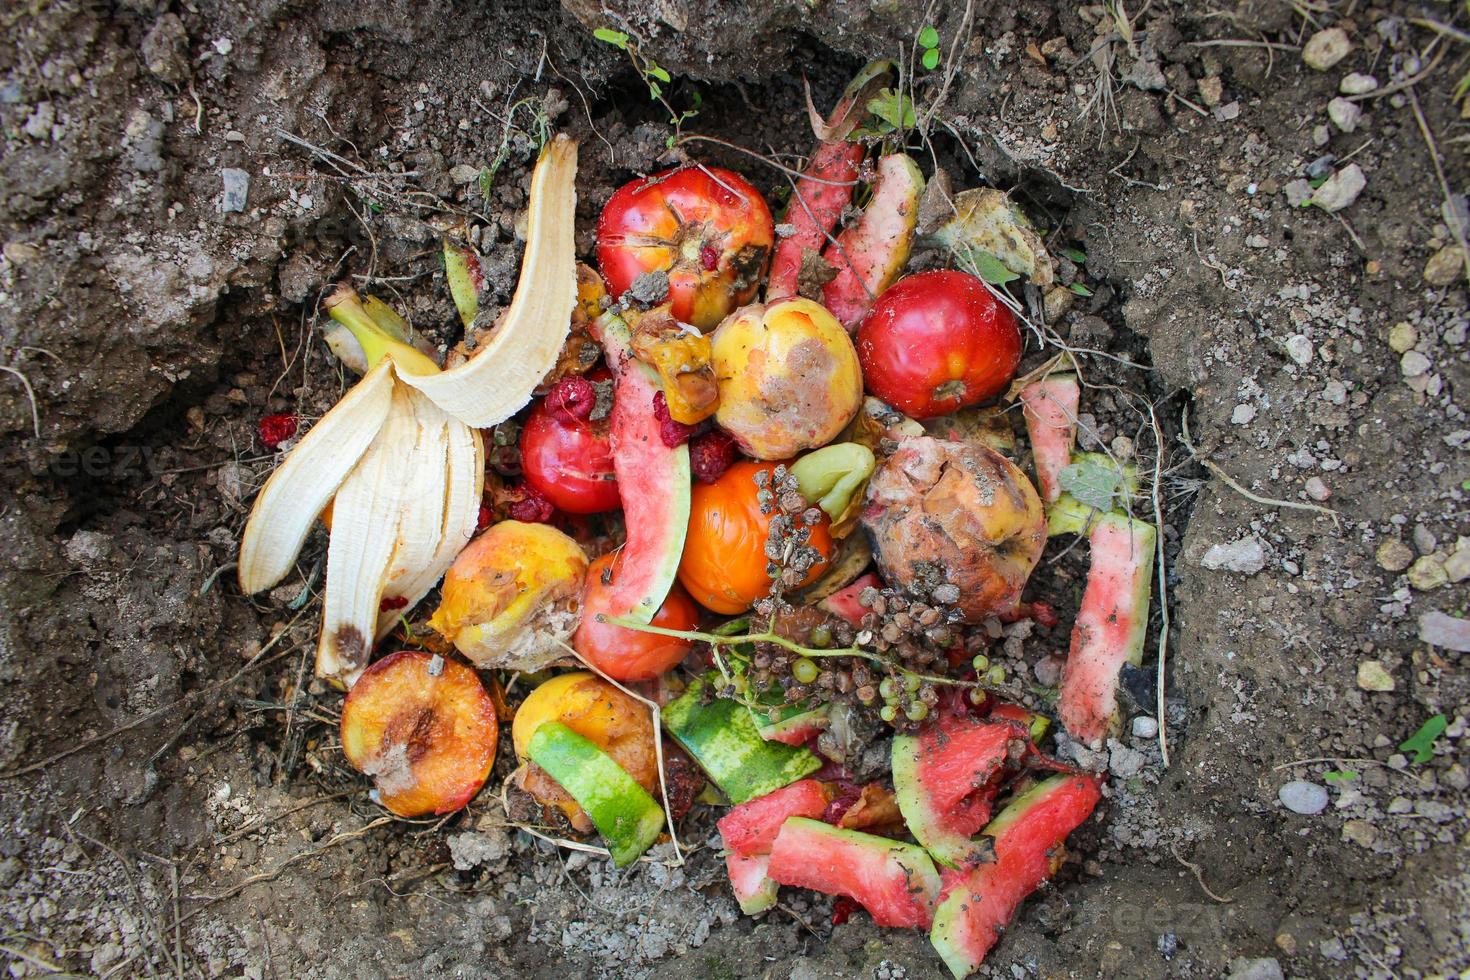 Doméstico residuos para compost desde frutas y vegetales en jardín. foto